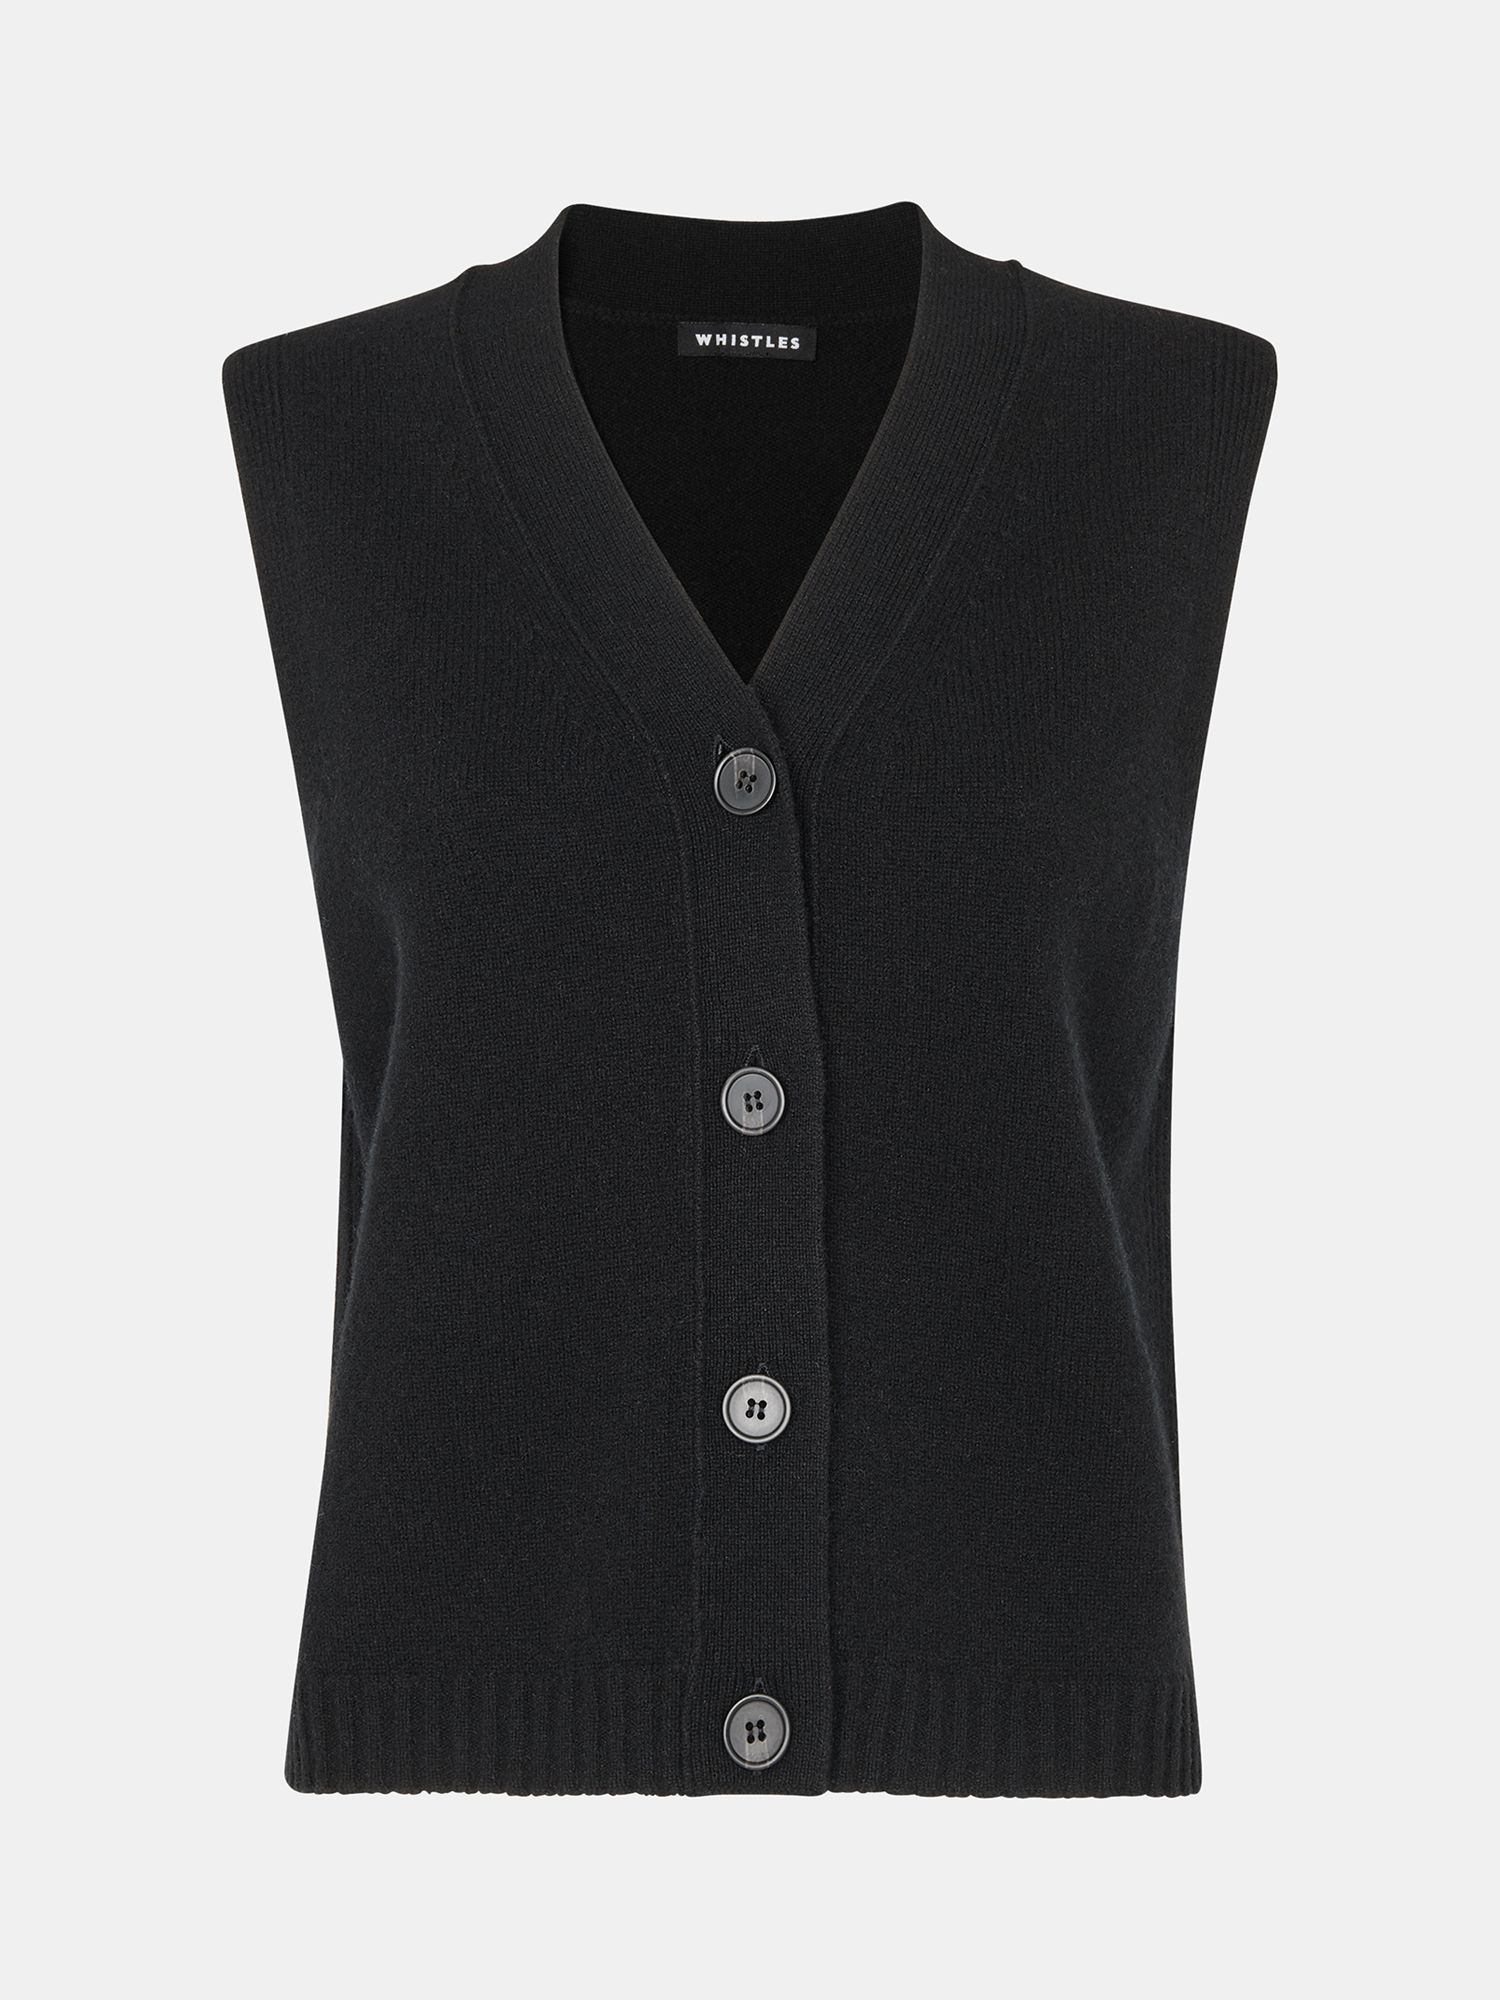 Whistles Wool Button Through Cardigan, Black at John Lewis & Partners